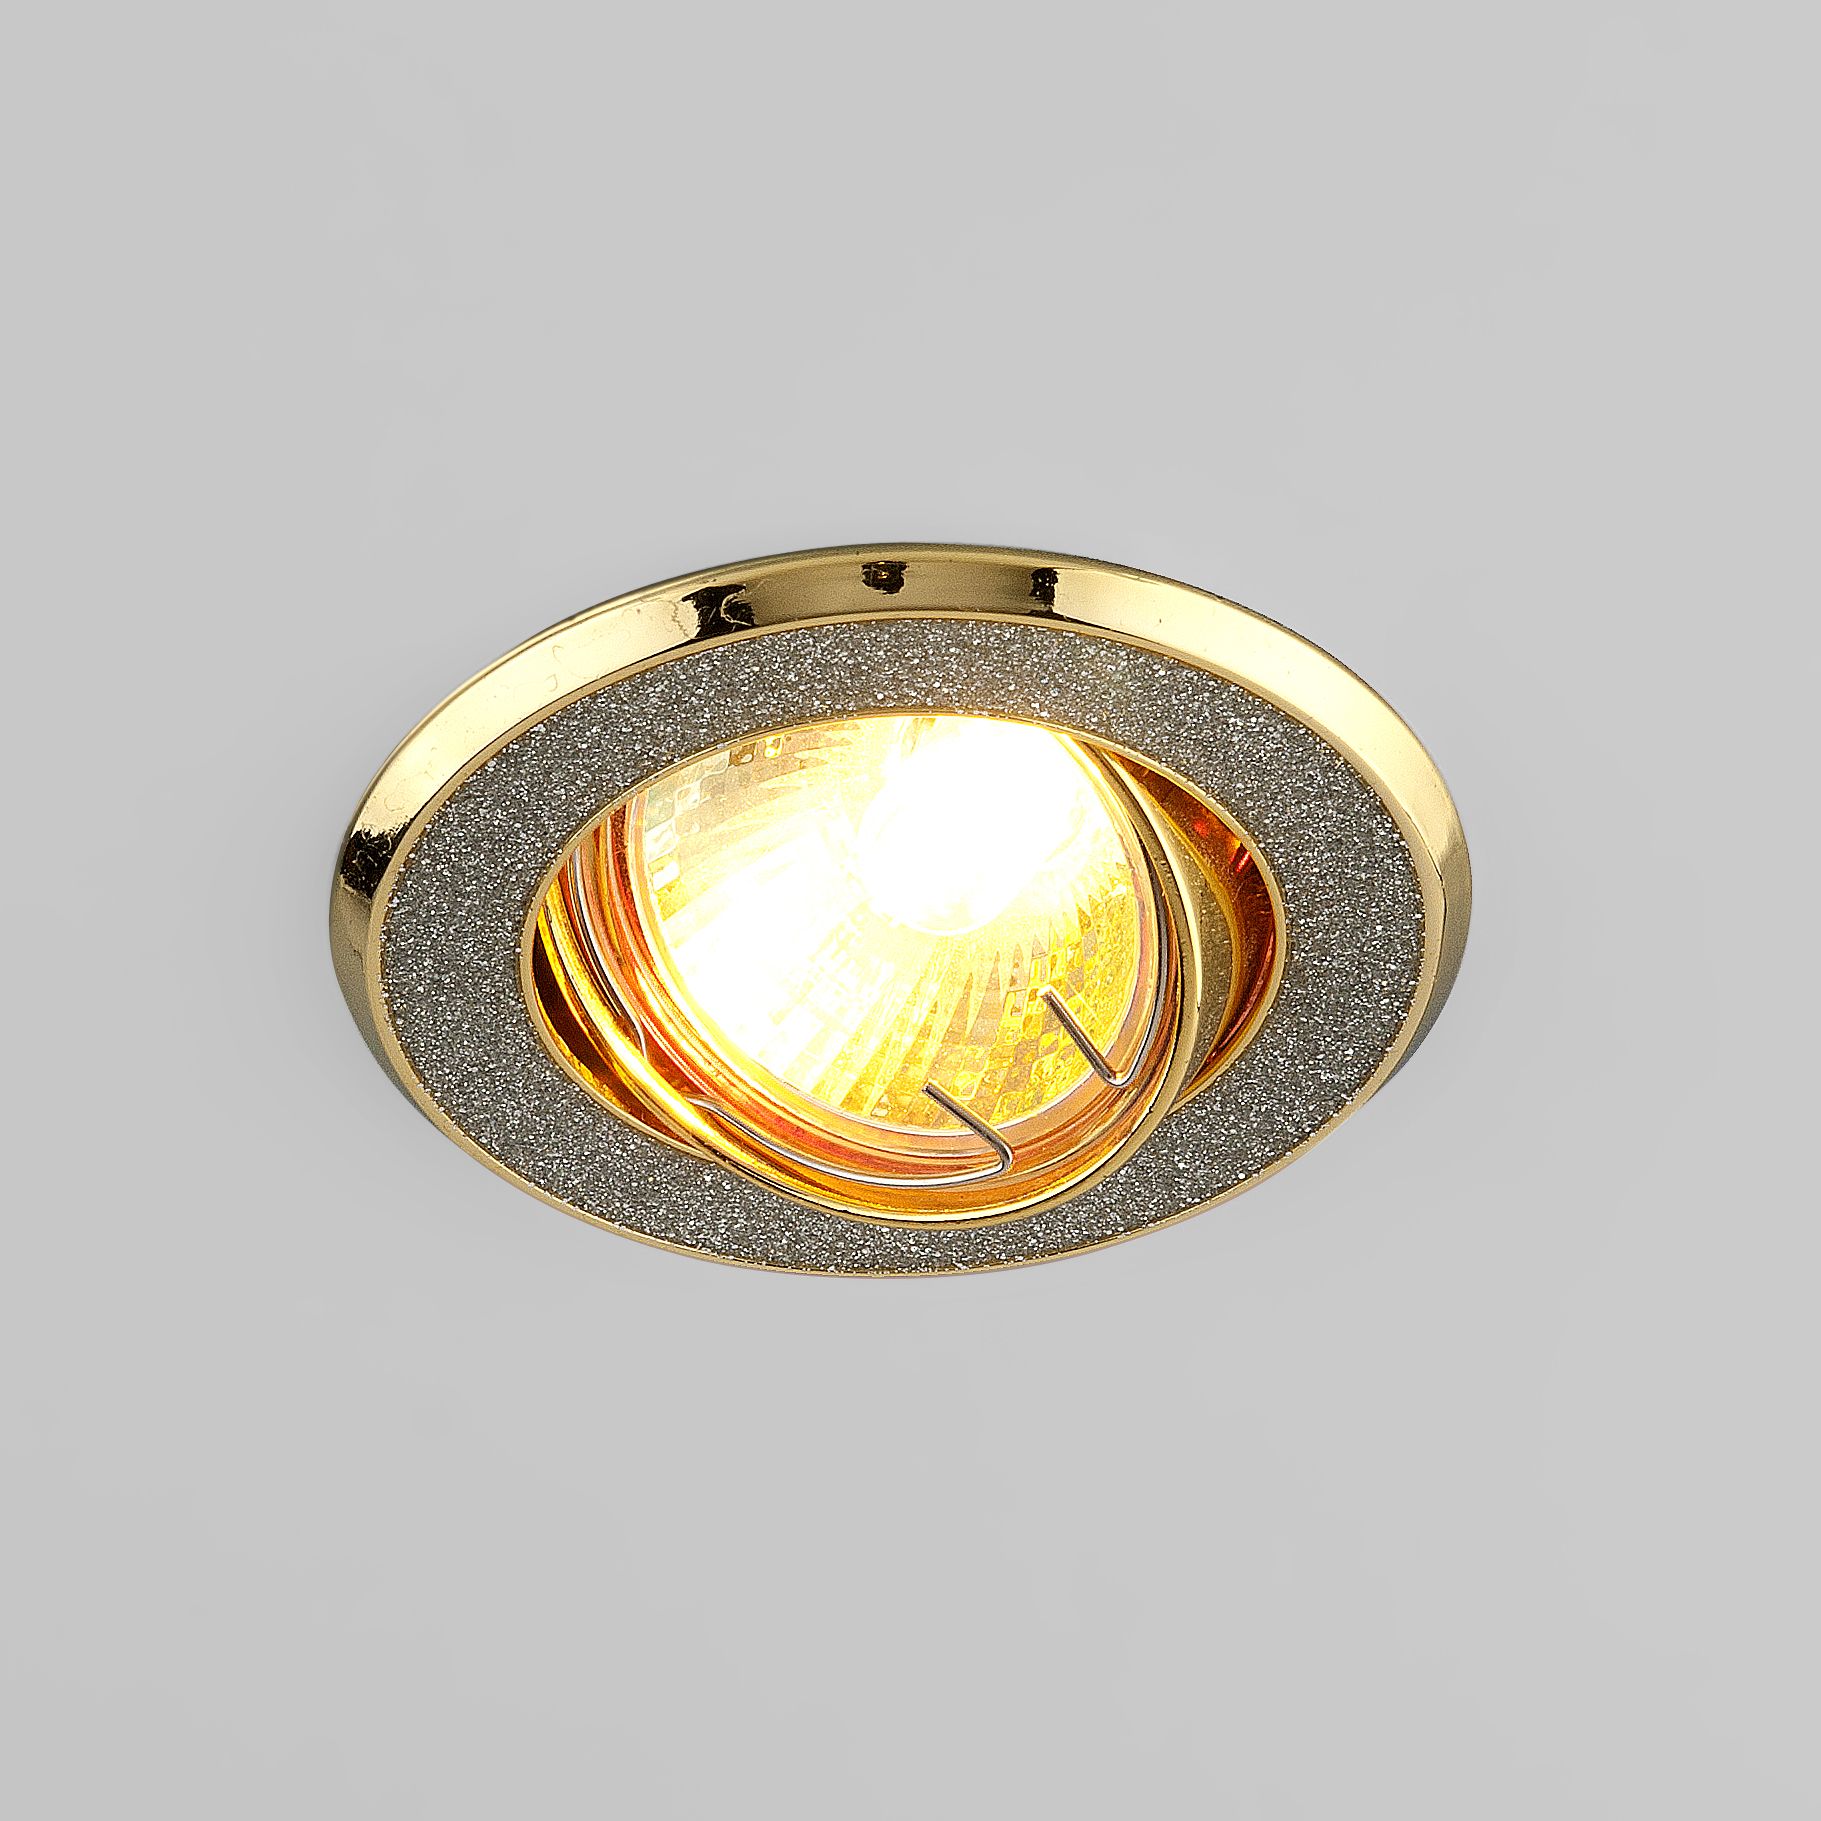 Встраиваемый точечный светильник 611 MR16 SL/GD серебряный блеск/золото 611 MR16 SL/GD серебряный блеск/золото